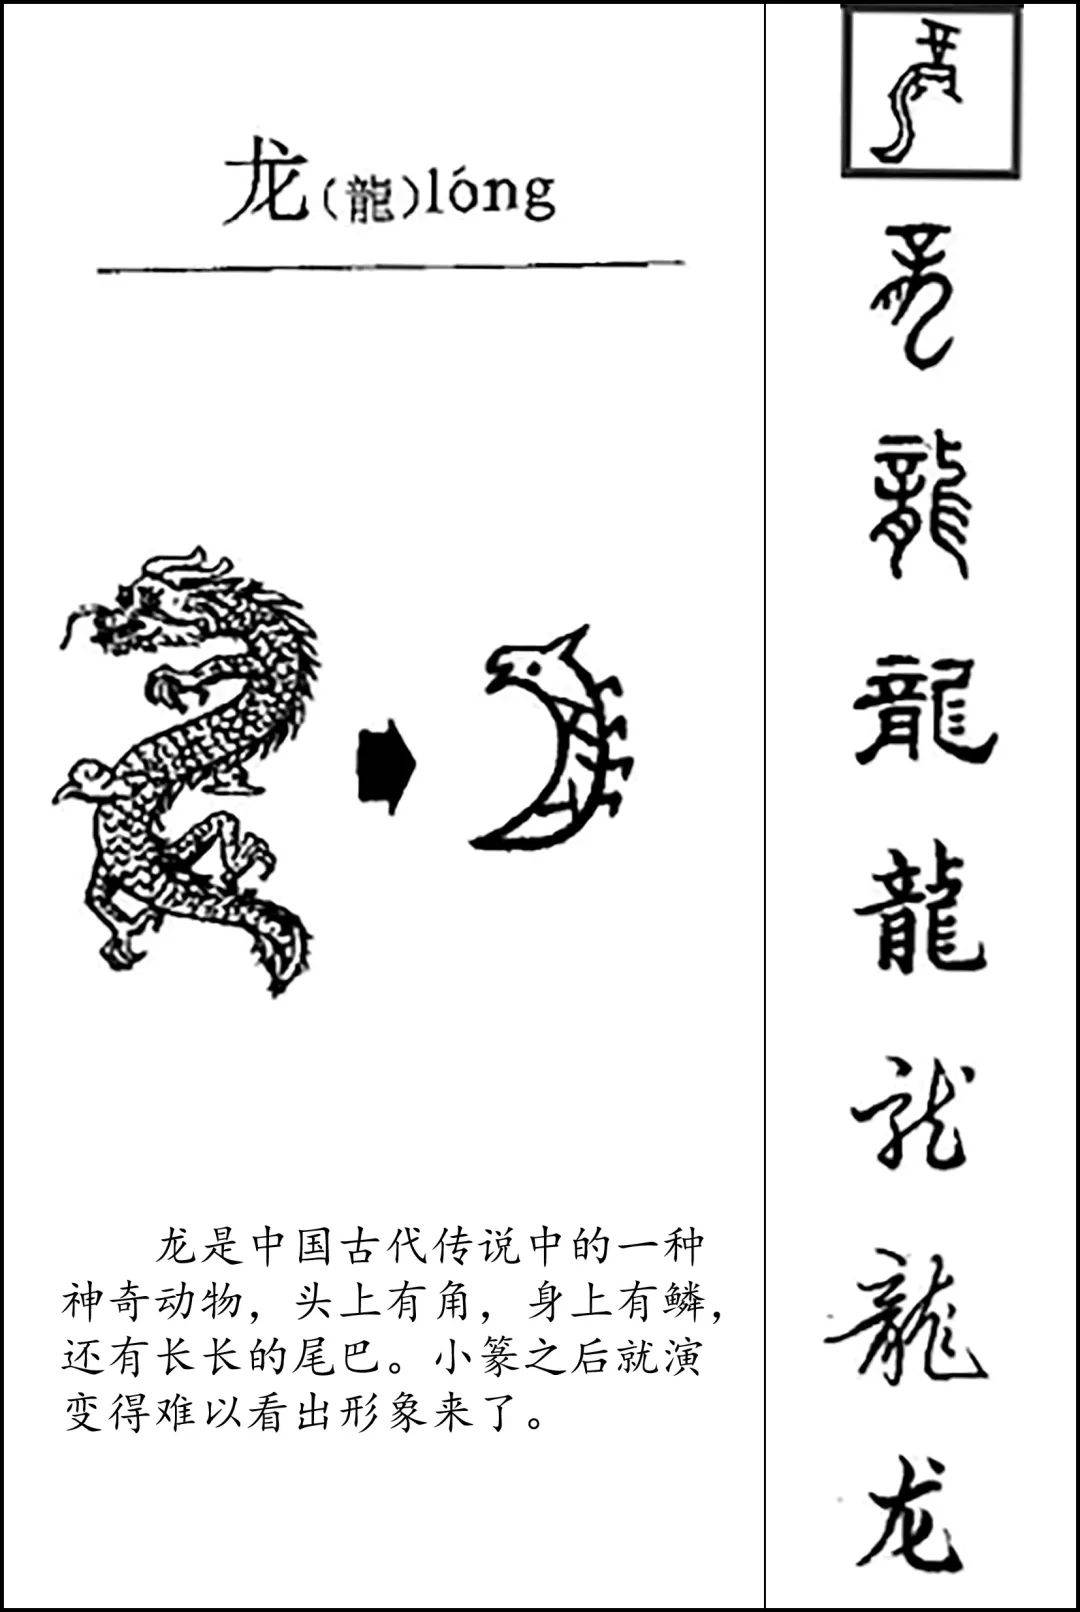 字写法的演变汉代的禇少孙认为龙的原型是蛇,他说:蛇化为龙,不变其文